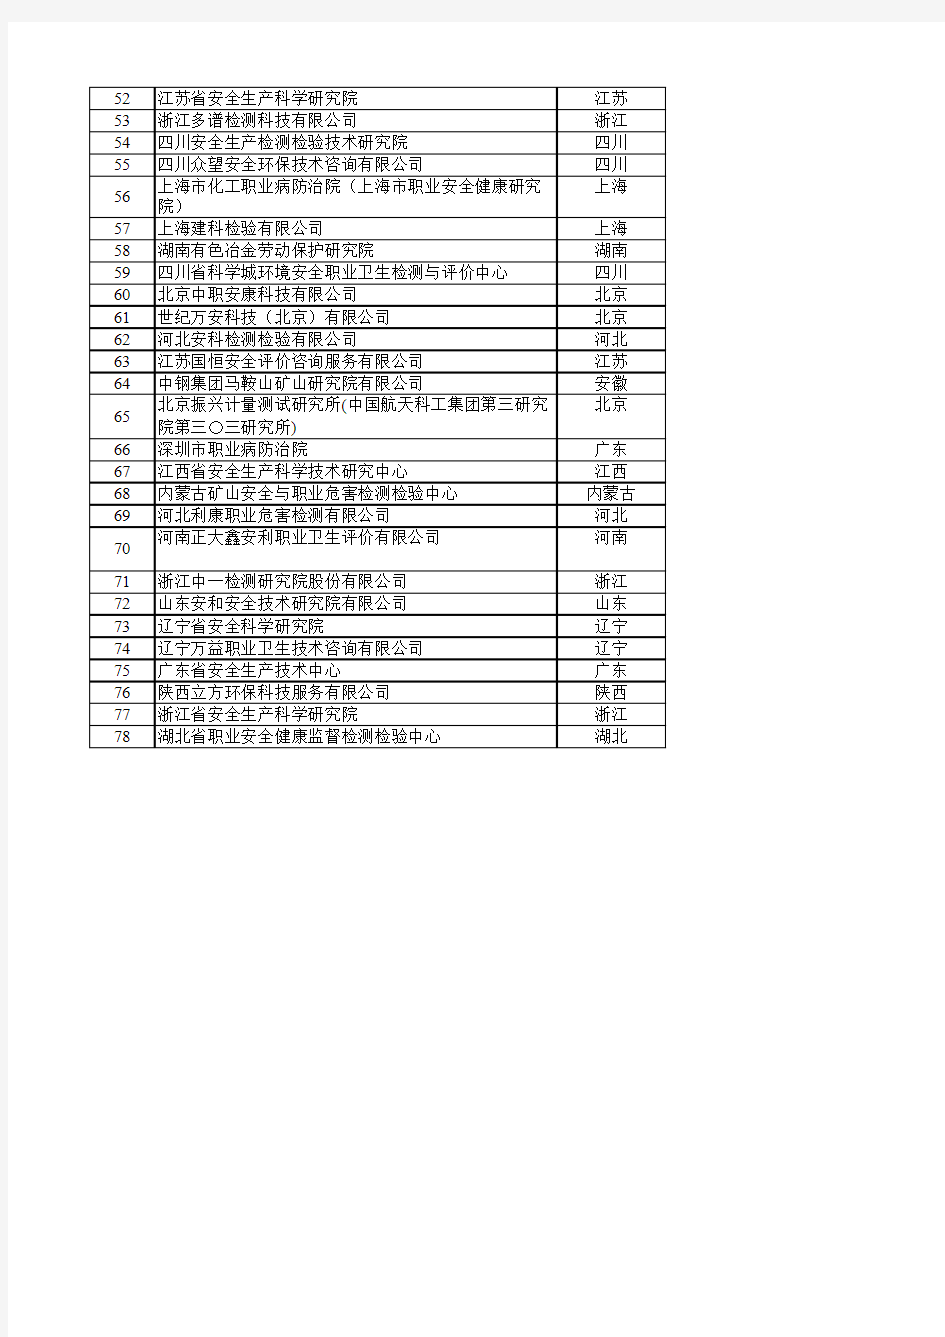 职业卫生技术服务甲级机构名单2015